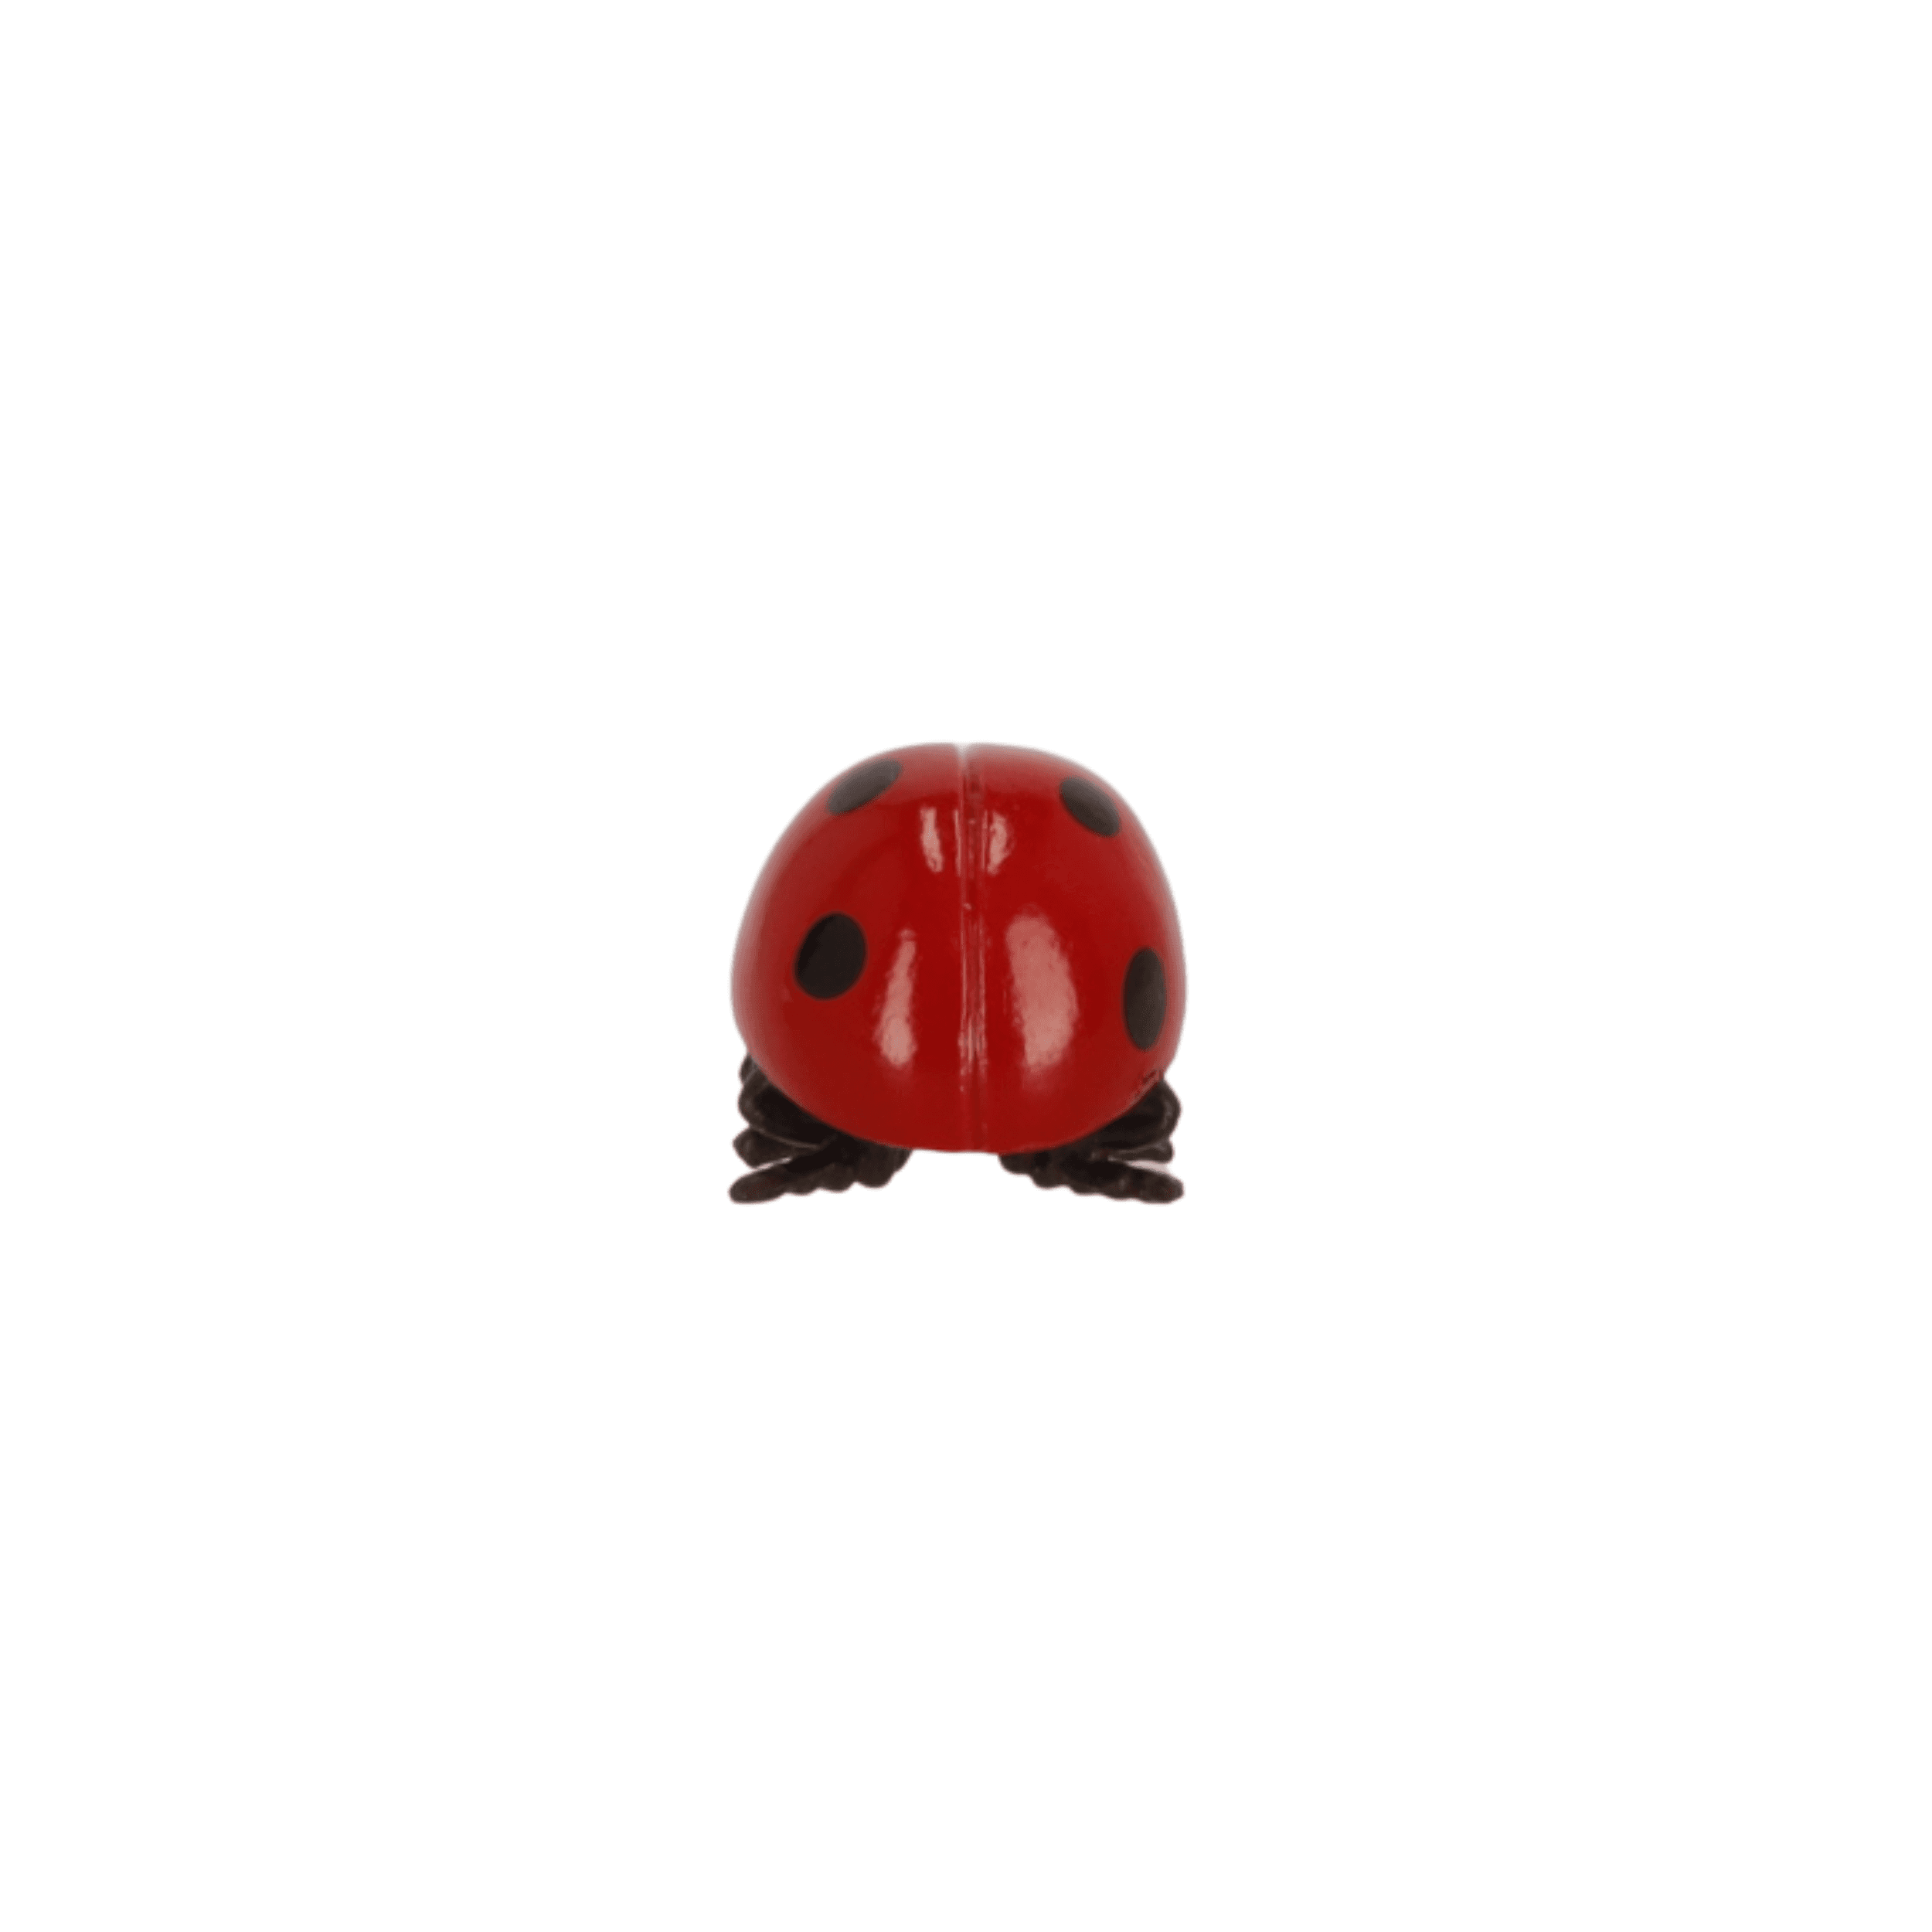 Collectible figurine Ladybug, Papo